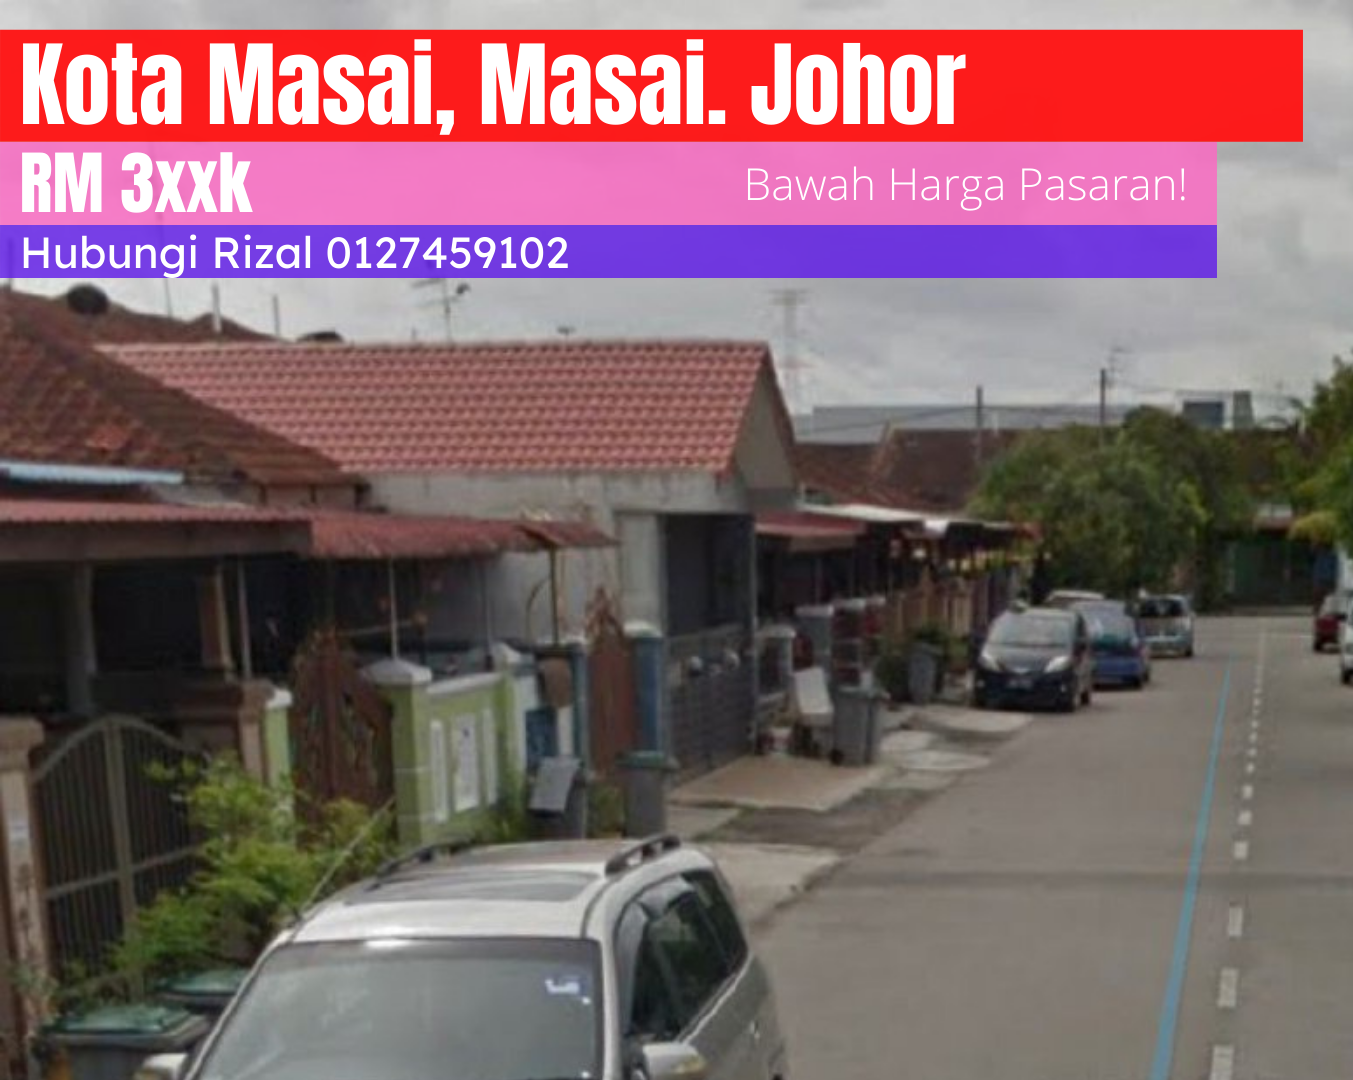 Jalan Mangga XX, Kota Masai, Masai. Johor